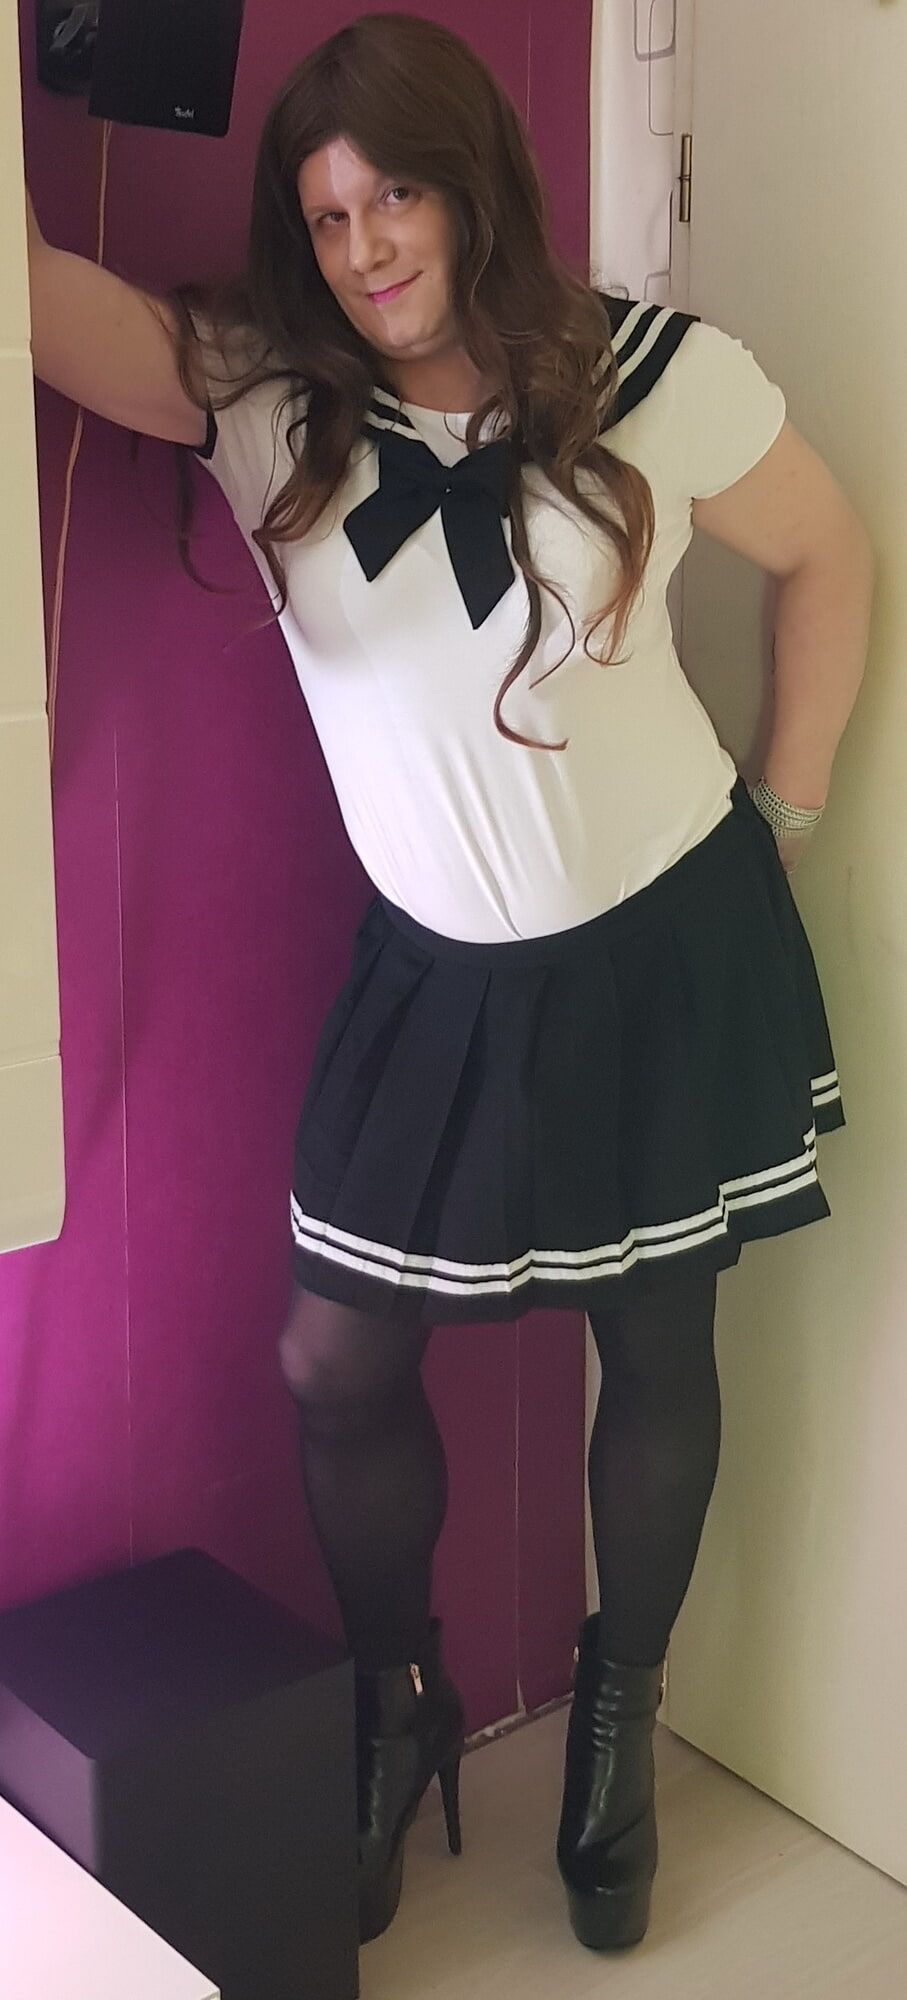 Schoolgirl Outfit #2